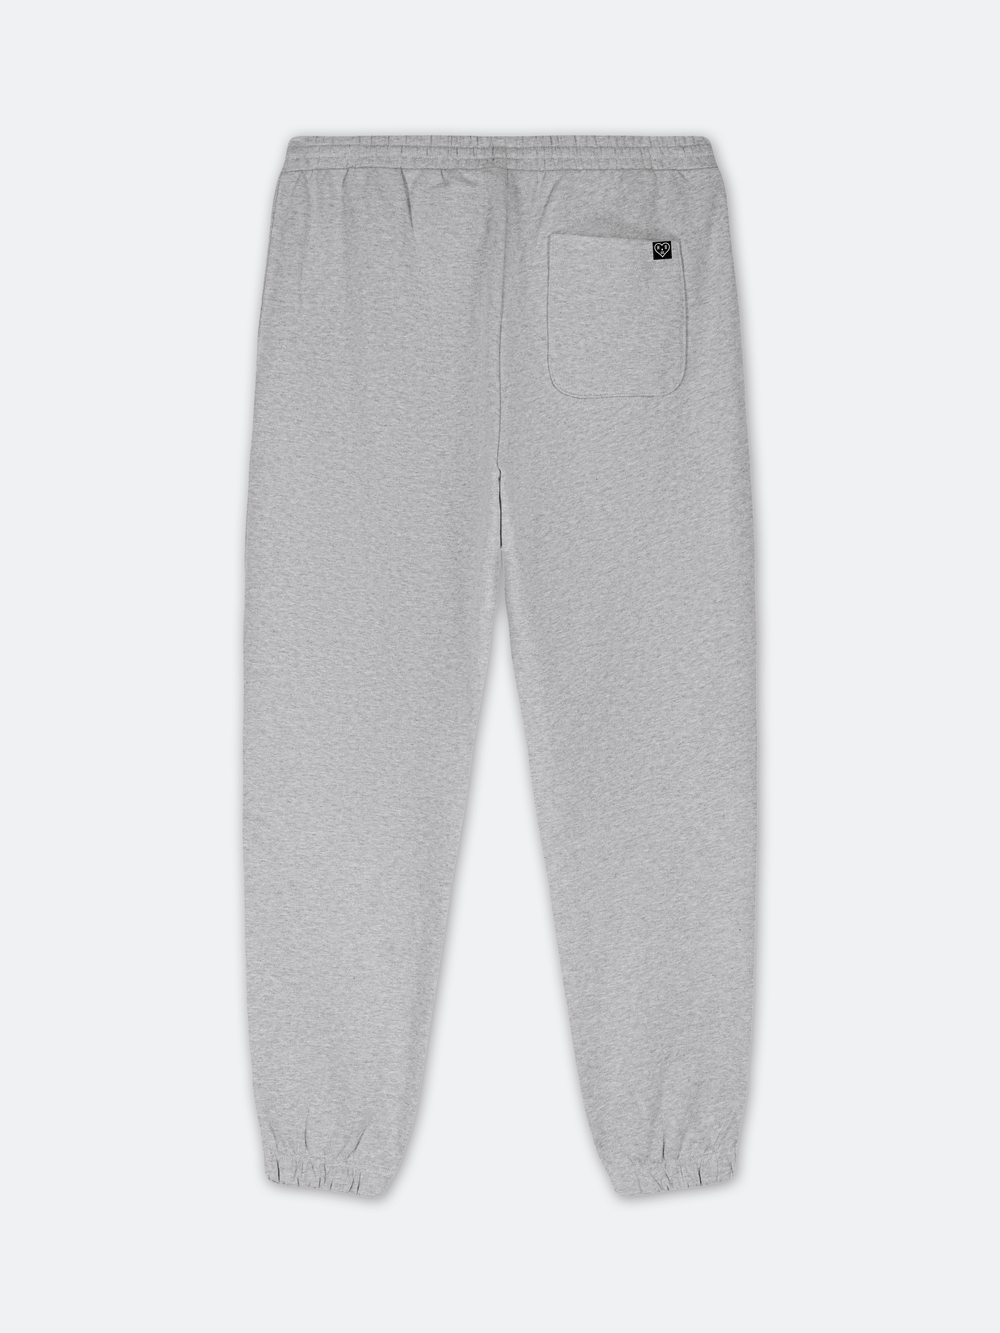 STENCIL SMALL PRESTIGE Sweat Pants (Grey)